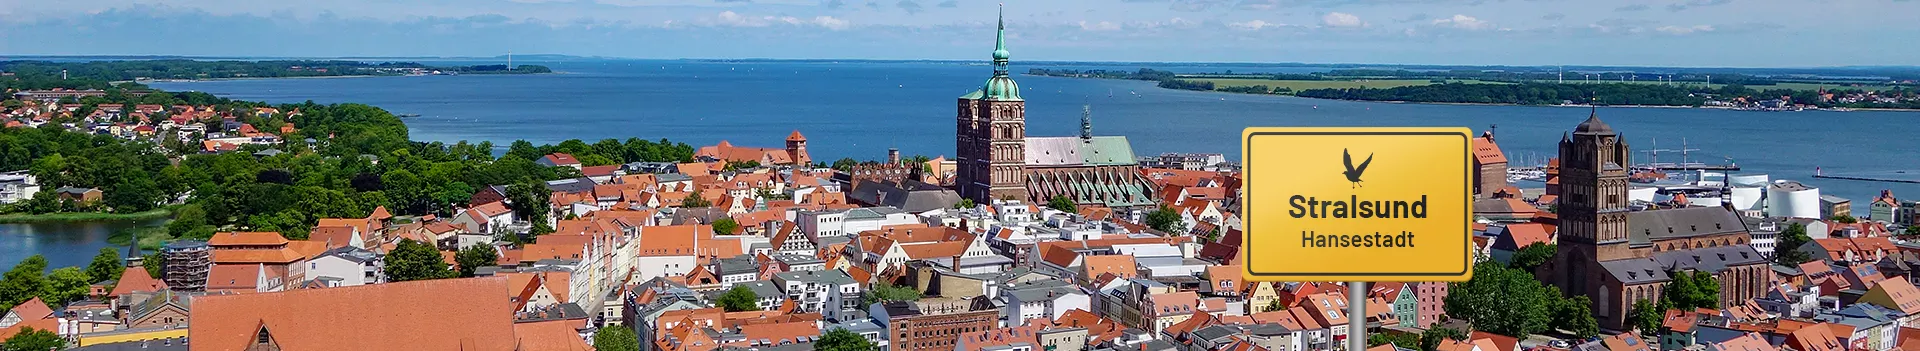 Hansestadt Stralsund – Altstadt am Wasser des Strelasunds